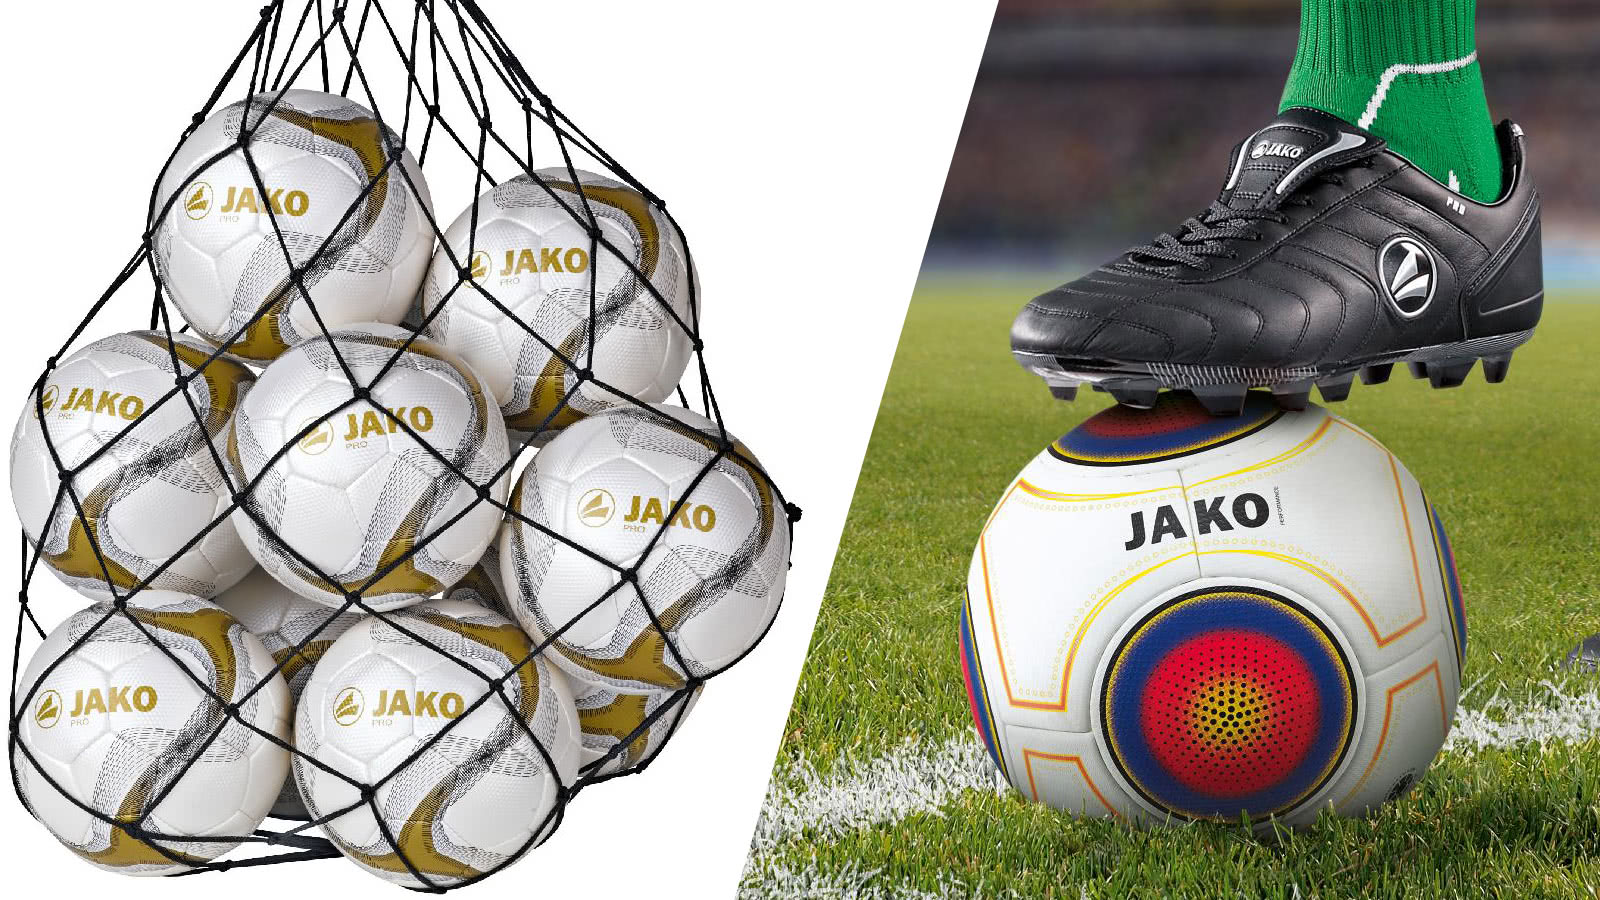 Das Zubehör zum Ballpaket oder Ballset mit Ballnetz, Ballsack und Co